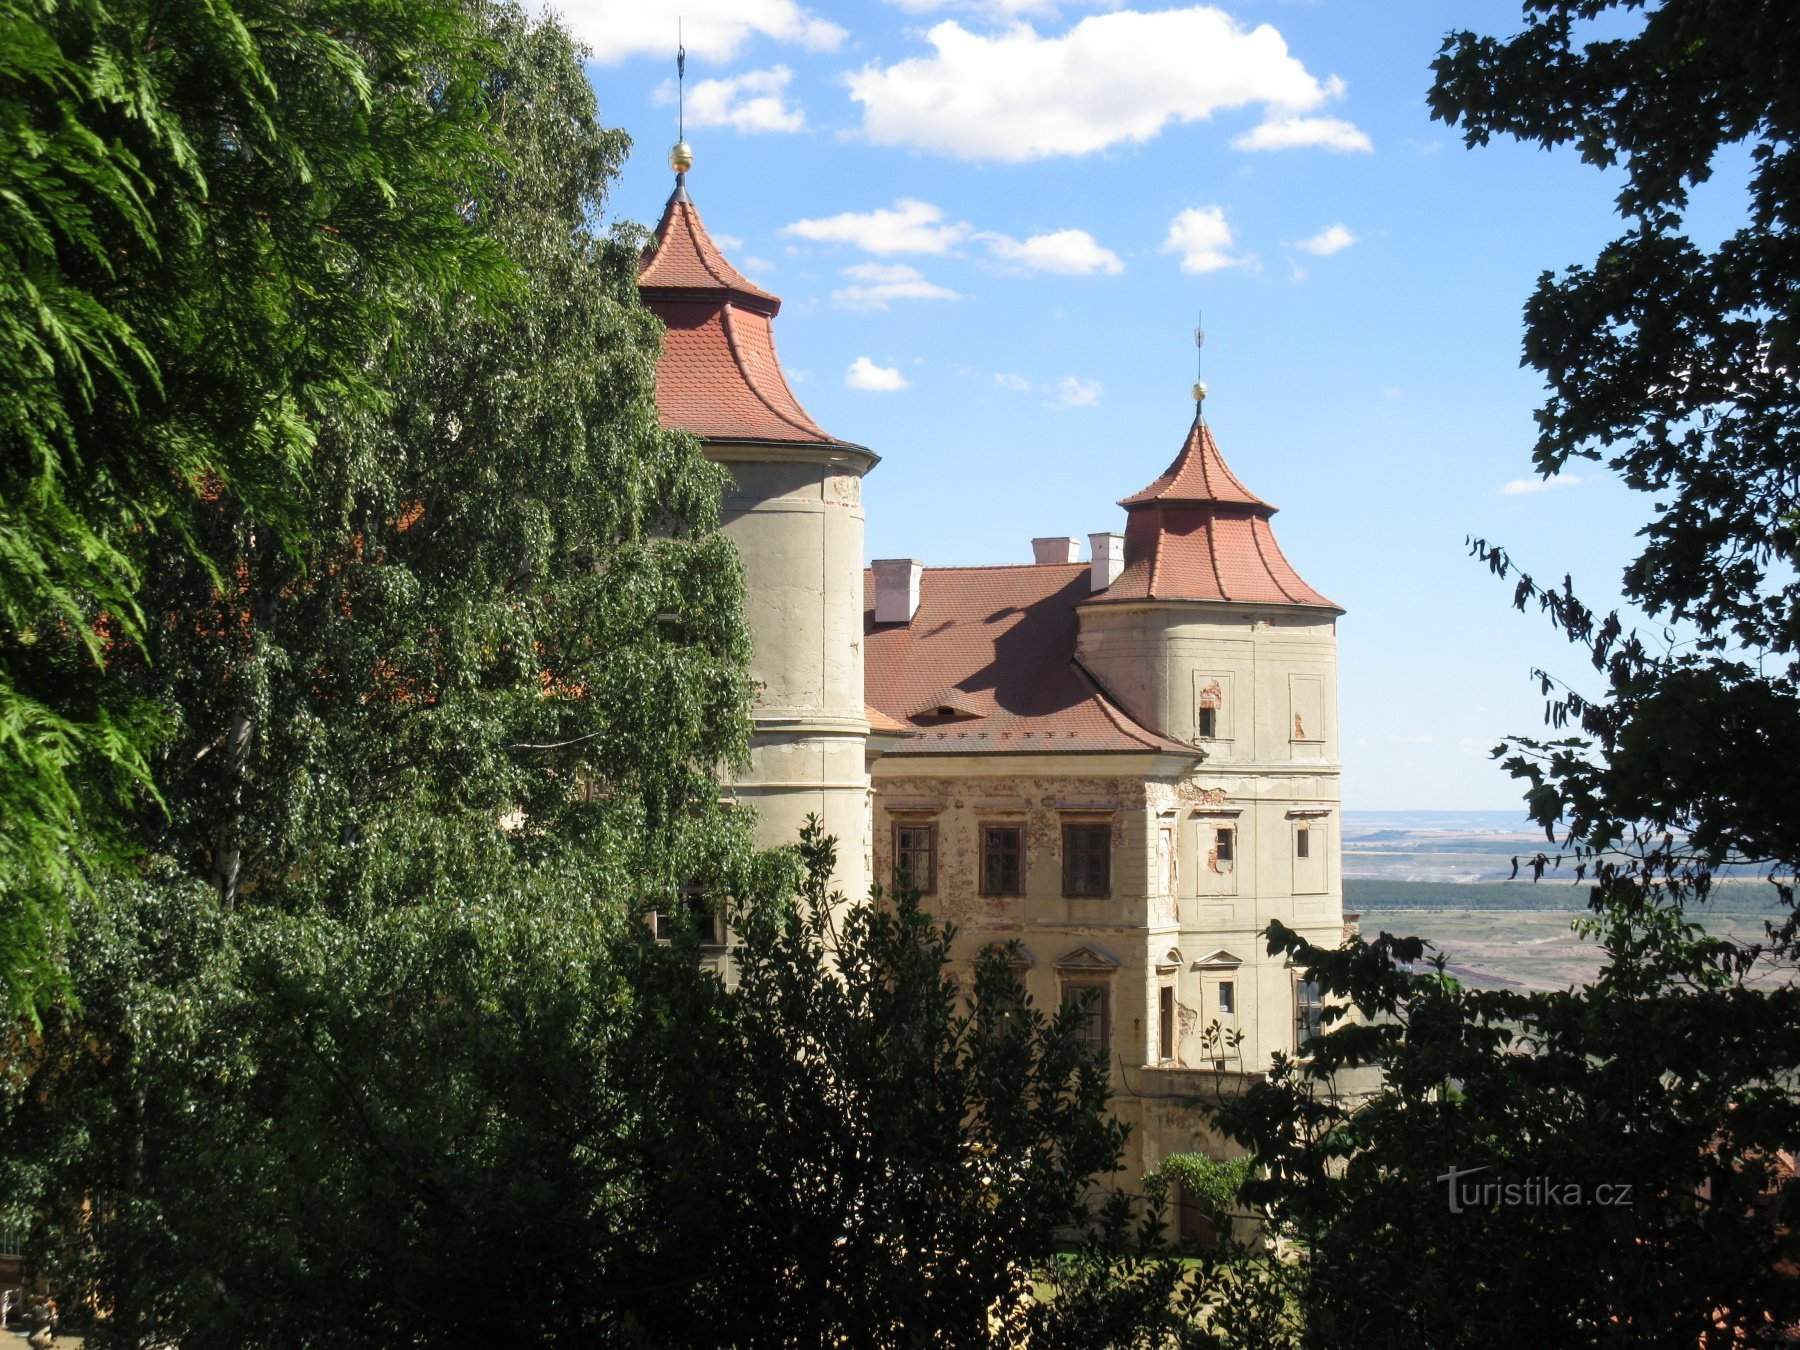 Άποψη του κάστρου από την πλαϊνή είσοδο